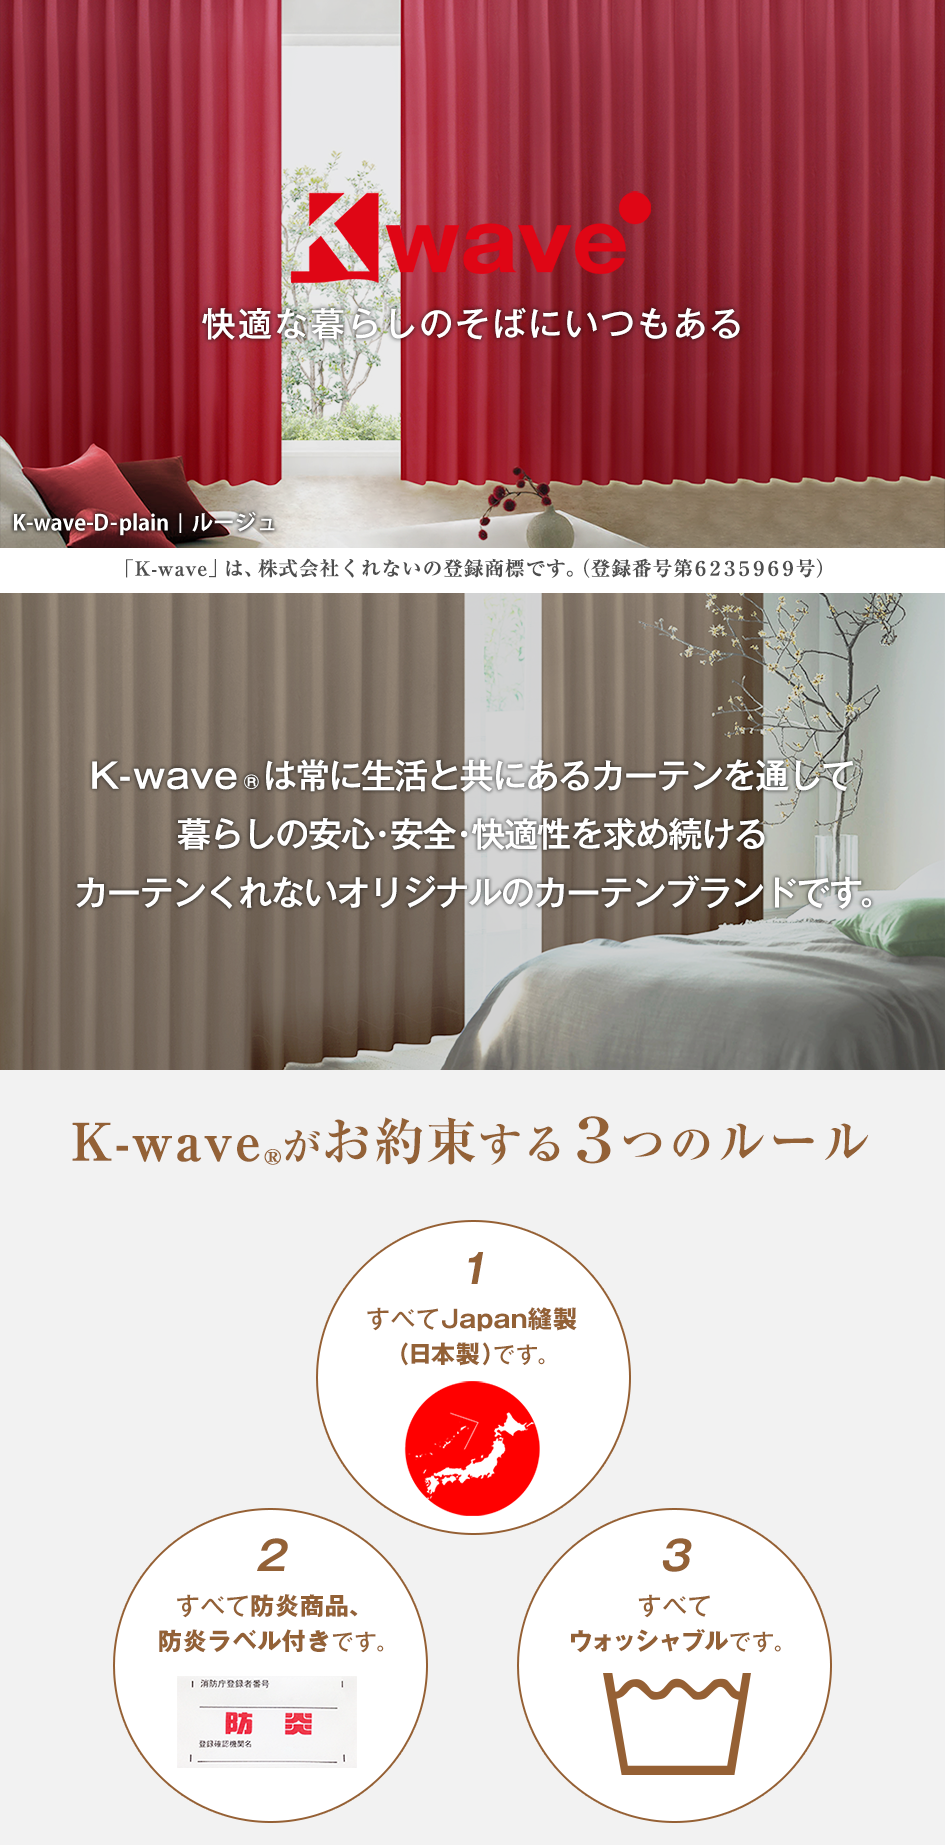 カーテン 断熱 遮光 K-wave-D-plain 防炎カーテン 2枚 ドレープカーテン :toiro100150:カーテン通販くれない  Yahoo!店 - 通販 - Yahoo!ショッピング